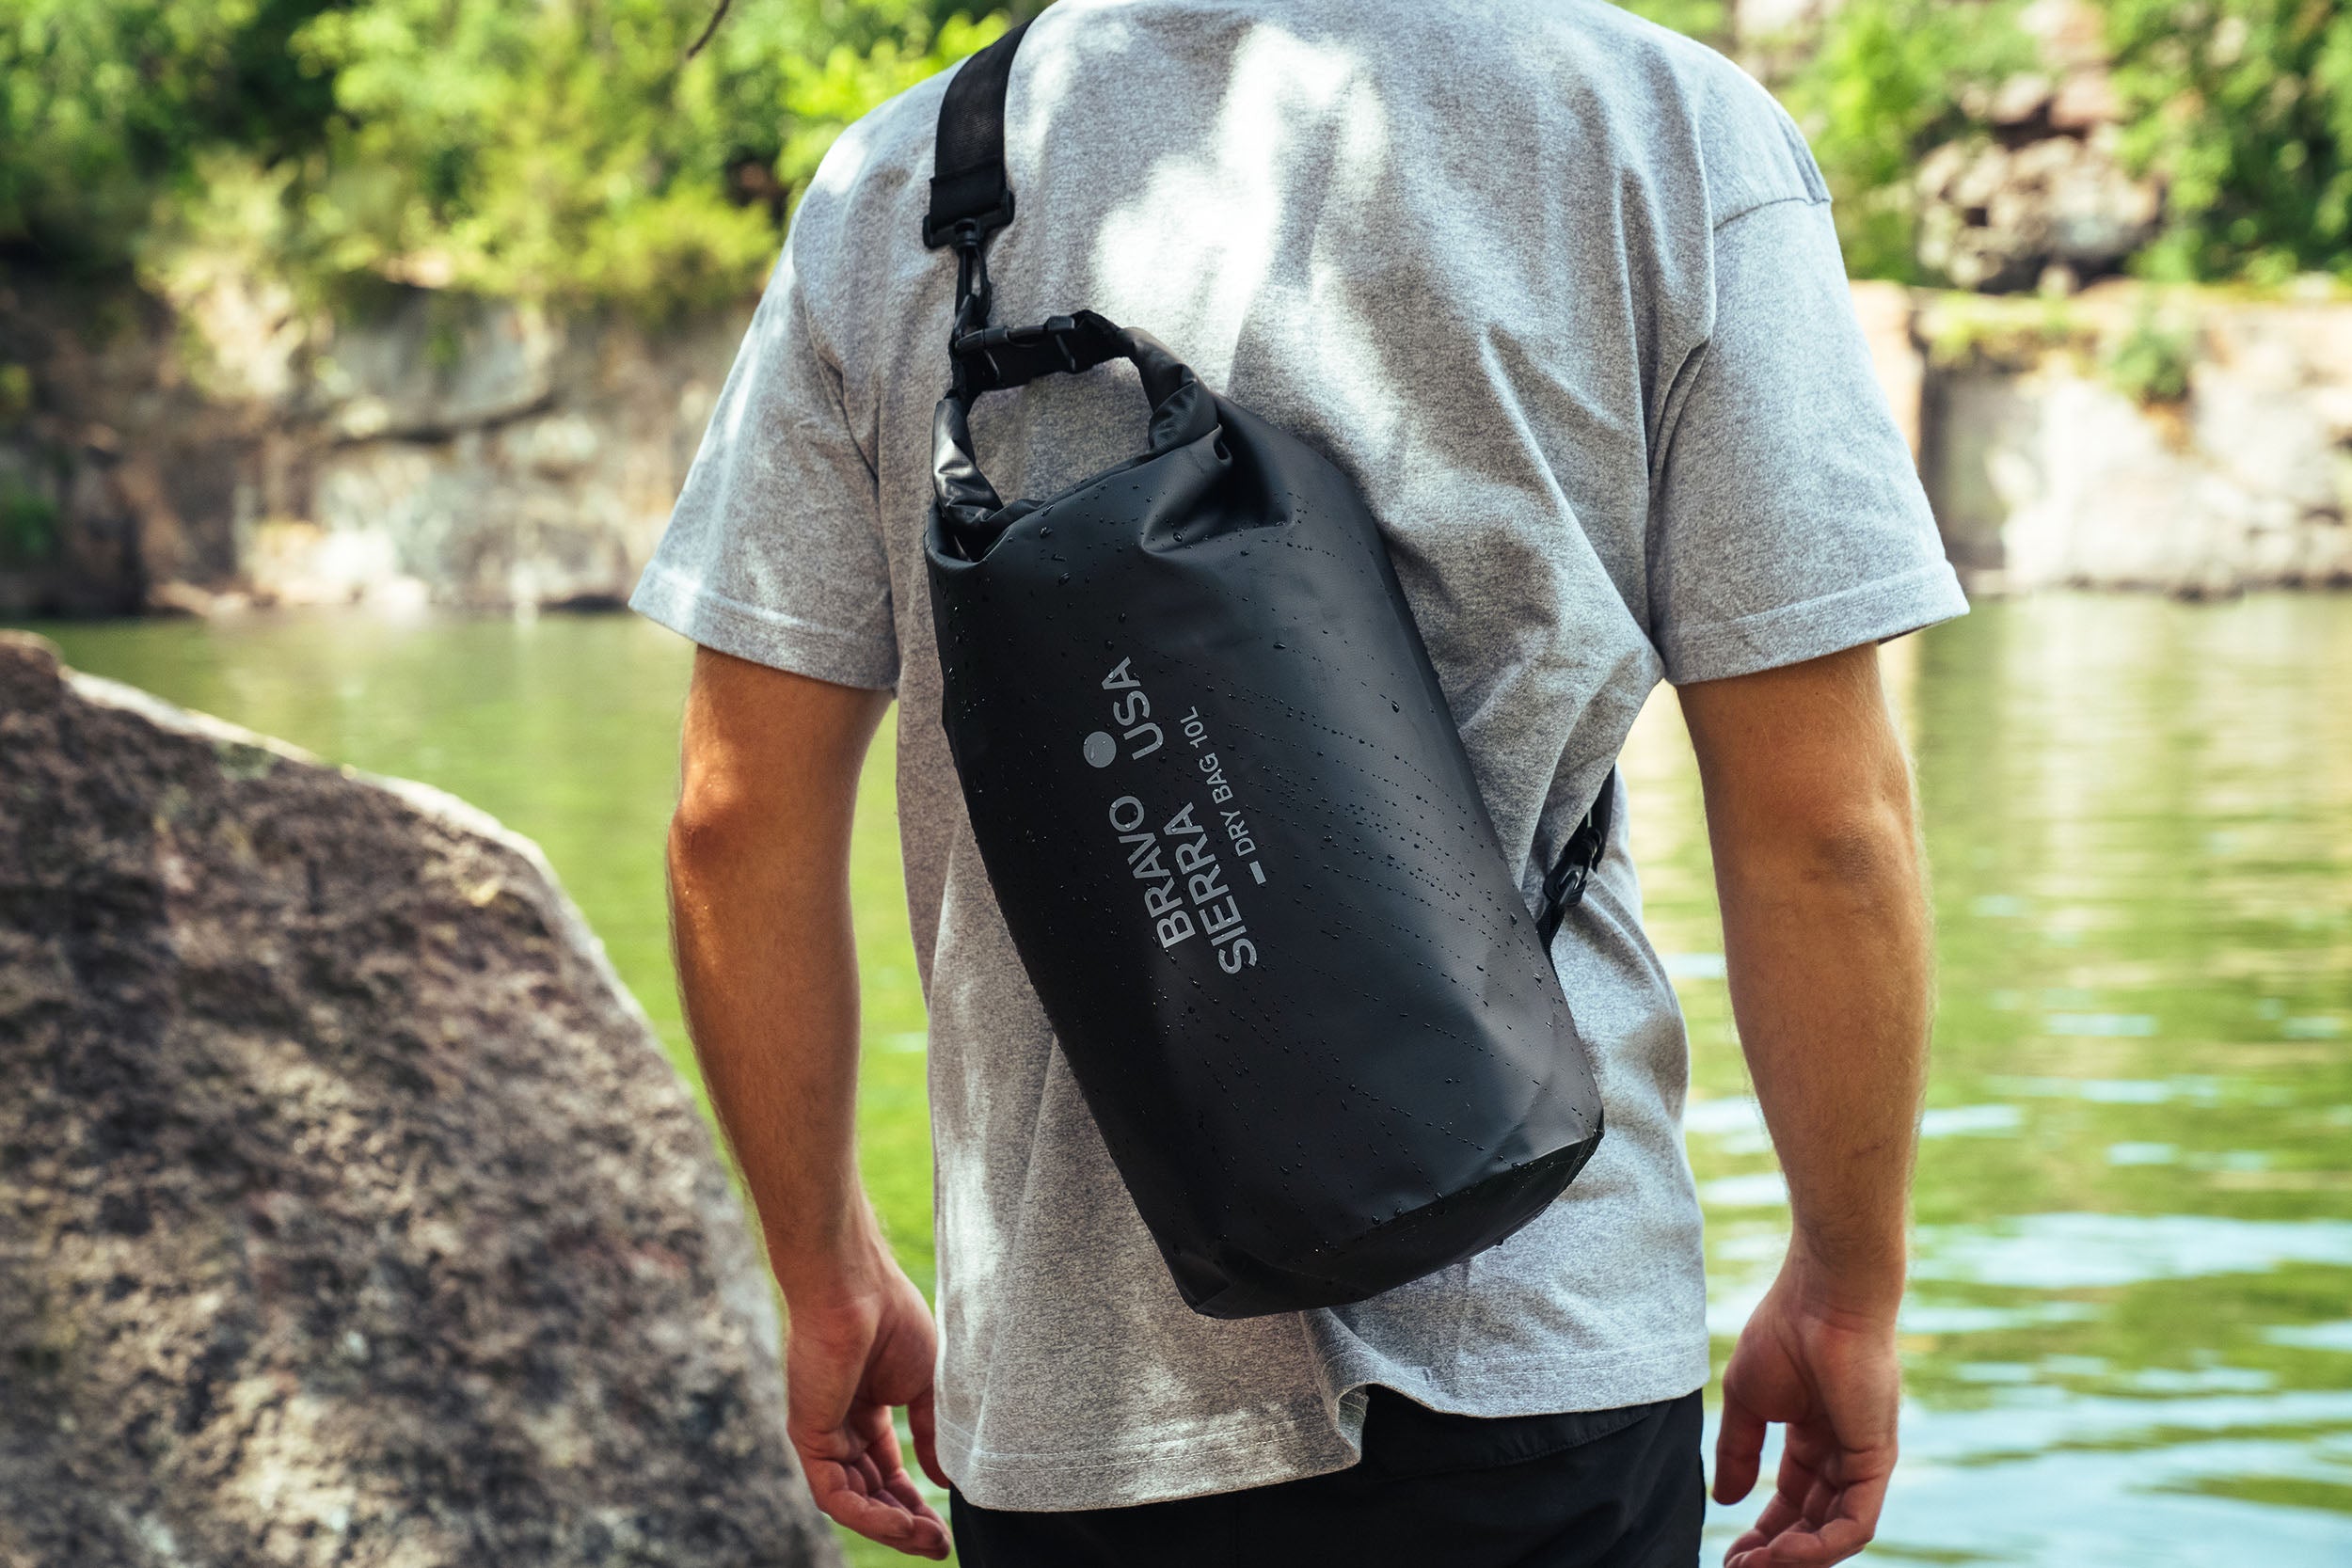 Elite Tactical Dry Bag by BRAVO SIERRA - Waterproof, 10L Capacity